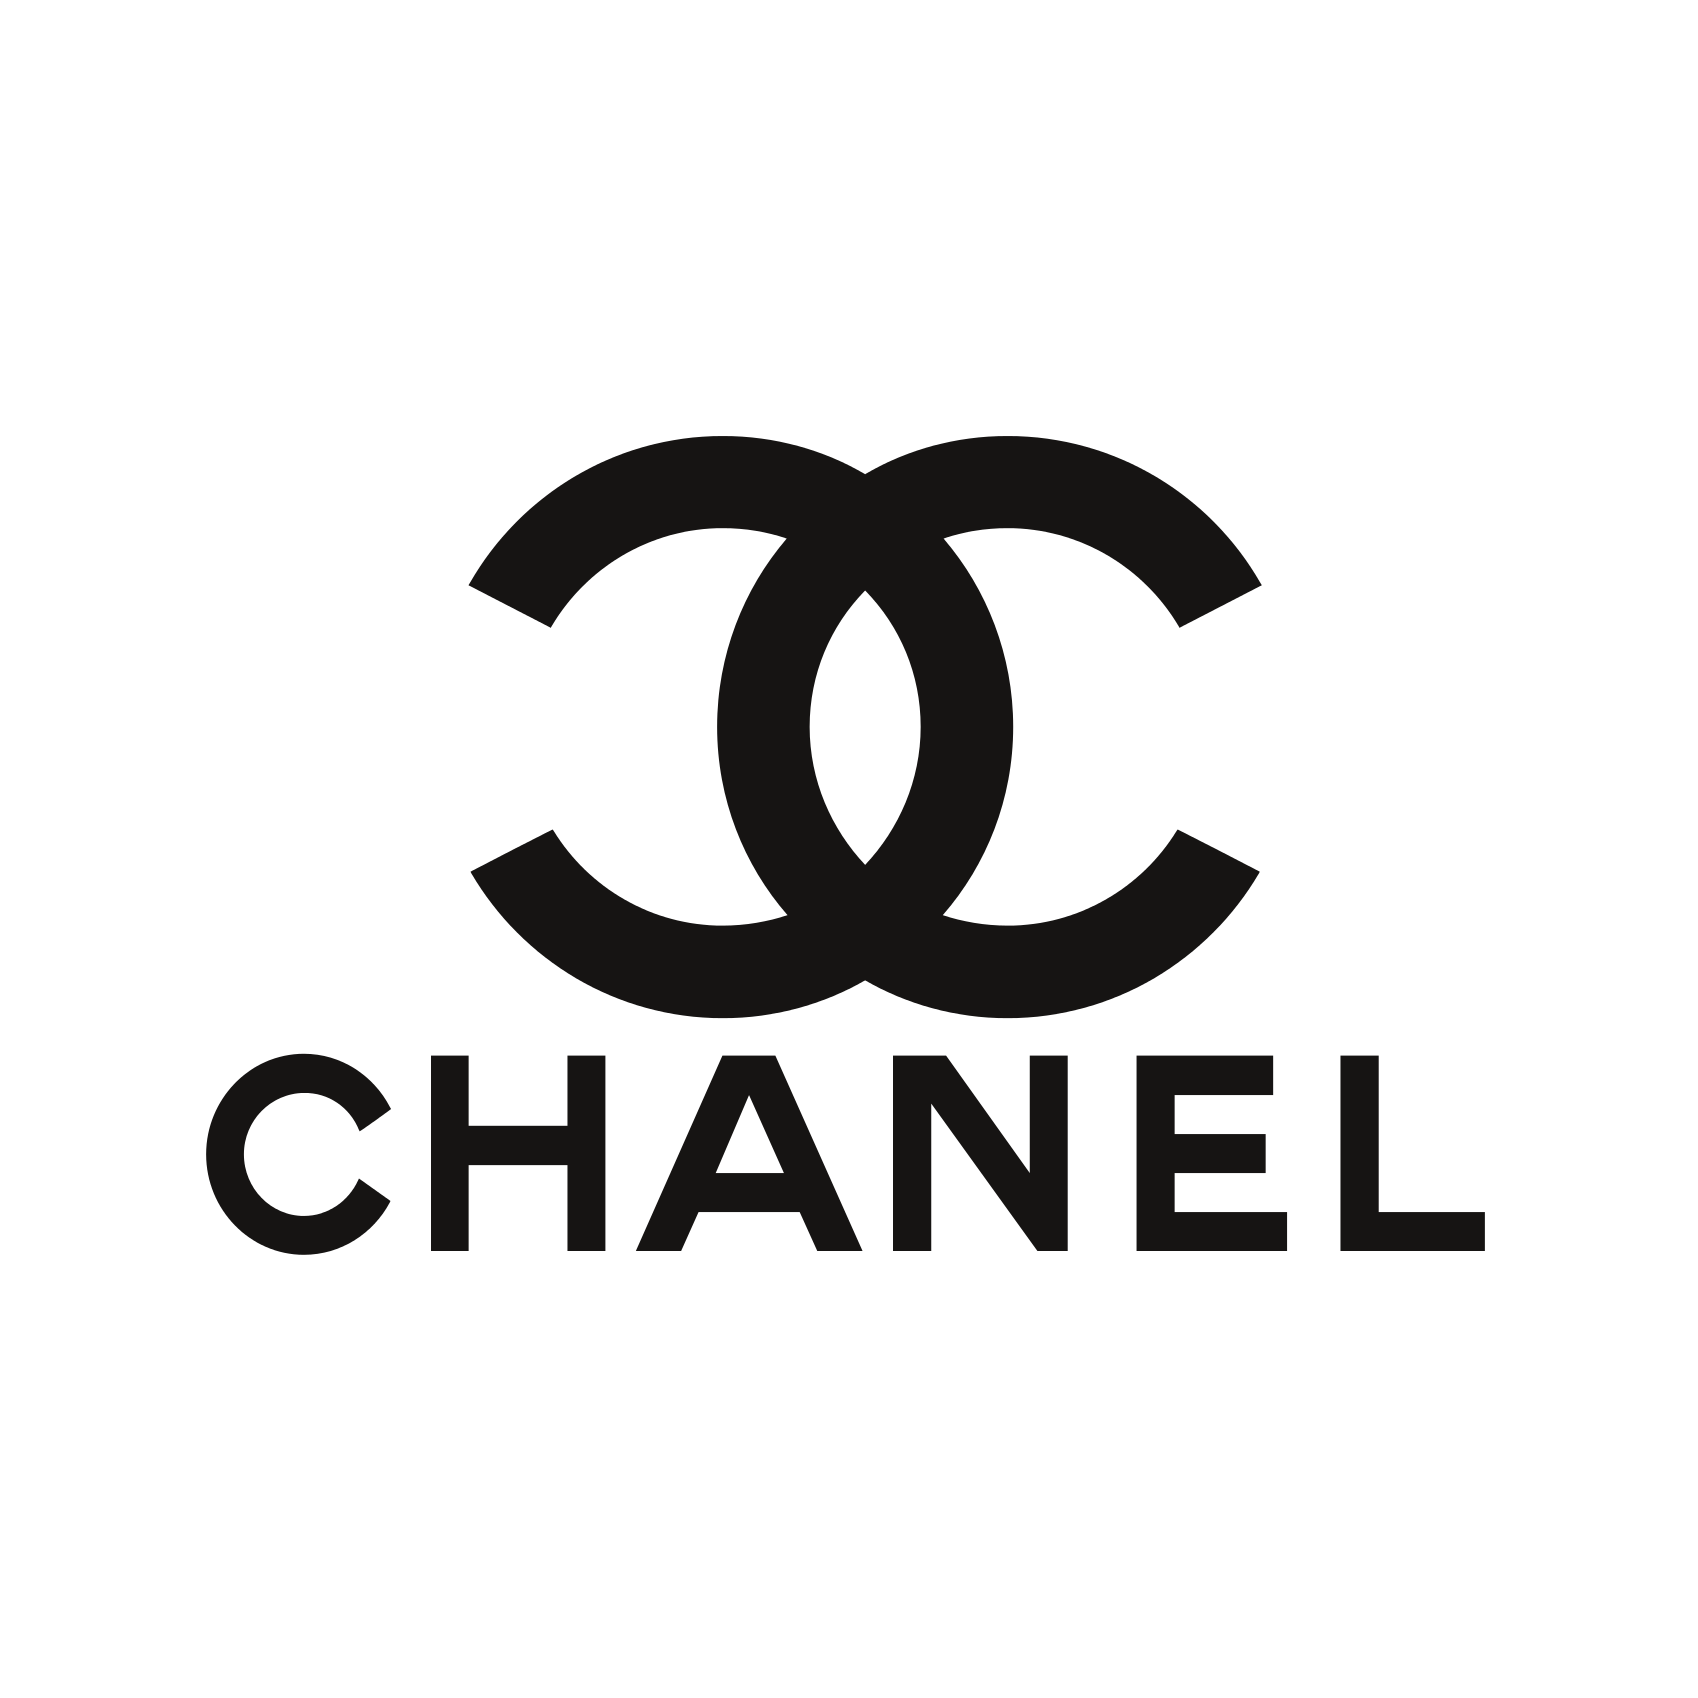 Chanel - sprrawdź wszystkie promocje